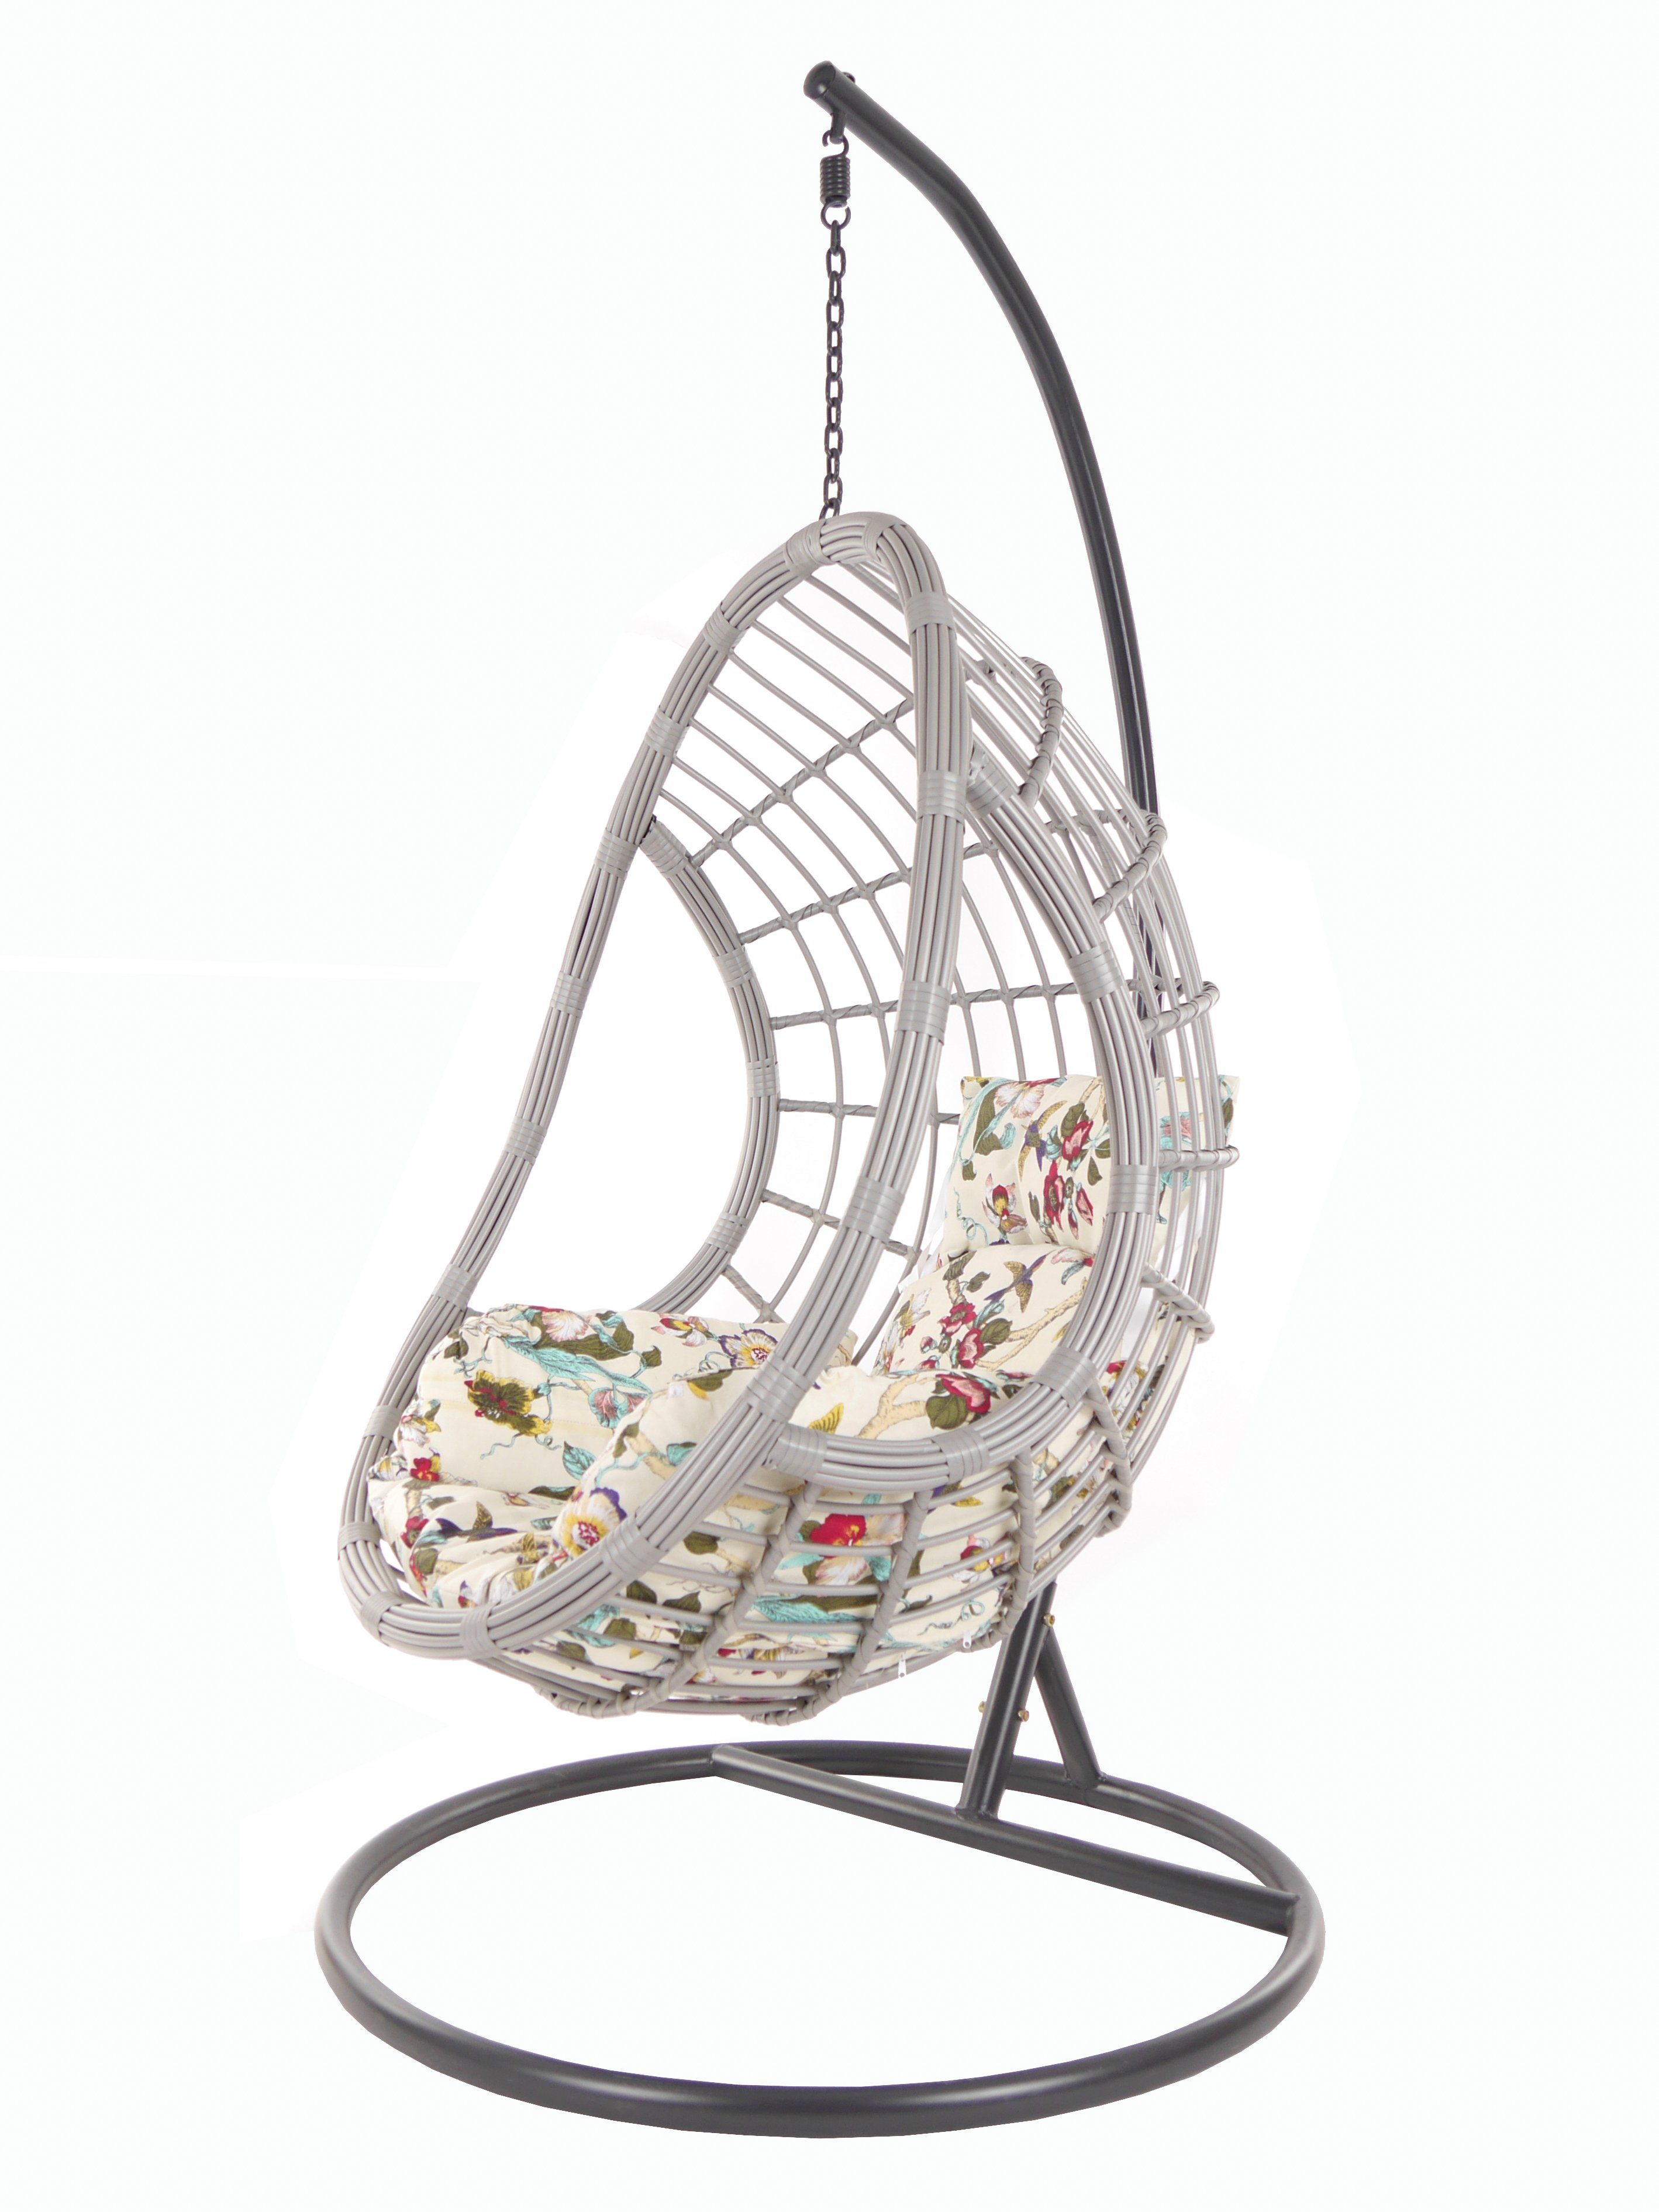 KIDEO Hängesessel PALMANOVA lightgrey, Swing Chair, Loungemöbel, Hängesessel mit Gestell und Kissen elfenbein gemustert (0056 ivory birds)